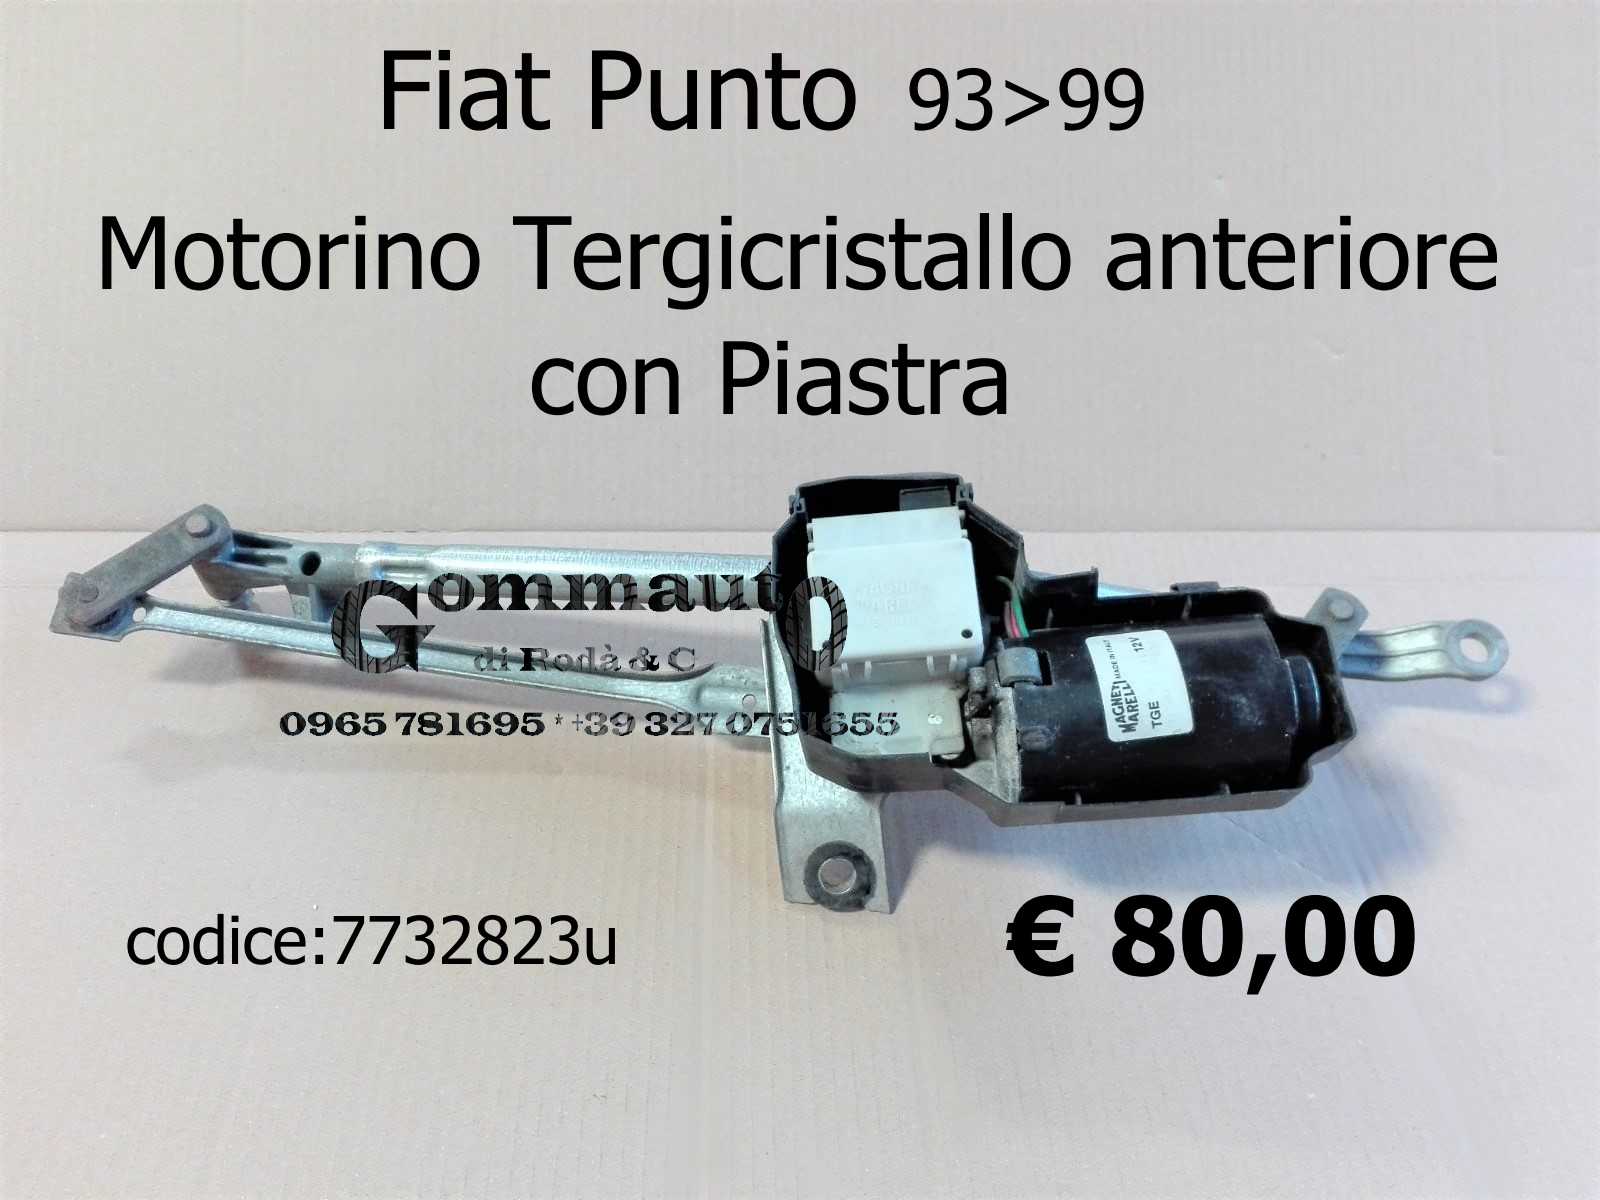 Motorino Tergicristallo anteriore con Piastra Fiat Punto 93>99